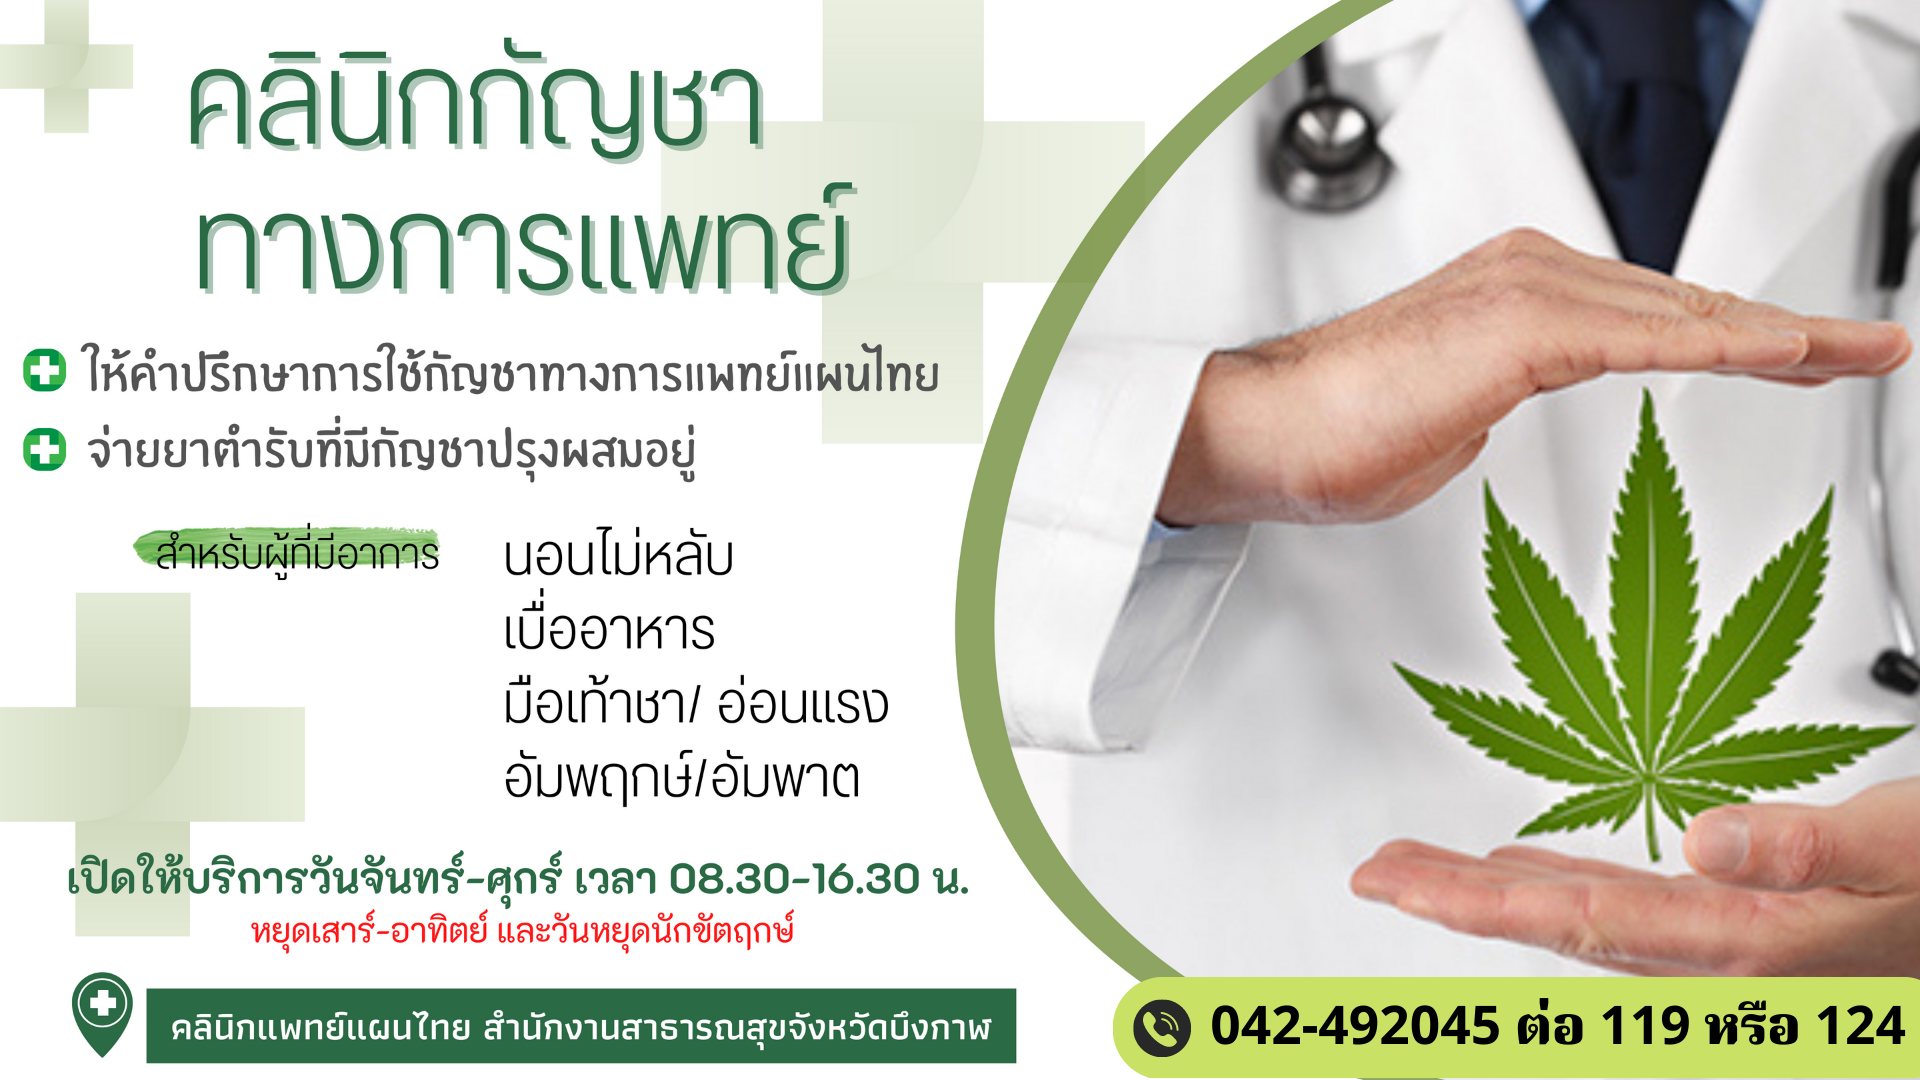 🔴สำนักงานสาธารณสุขจังหวัดบึงกาฬ เปิดบริการให้คำปรึกษาการใช้ "กัญชาทางการแพทย์แผนไทย"🌿💊